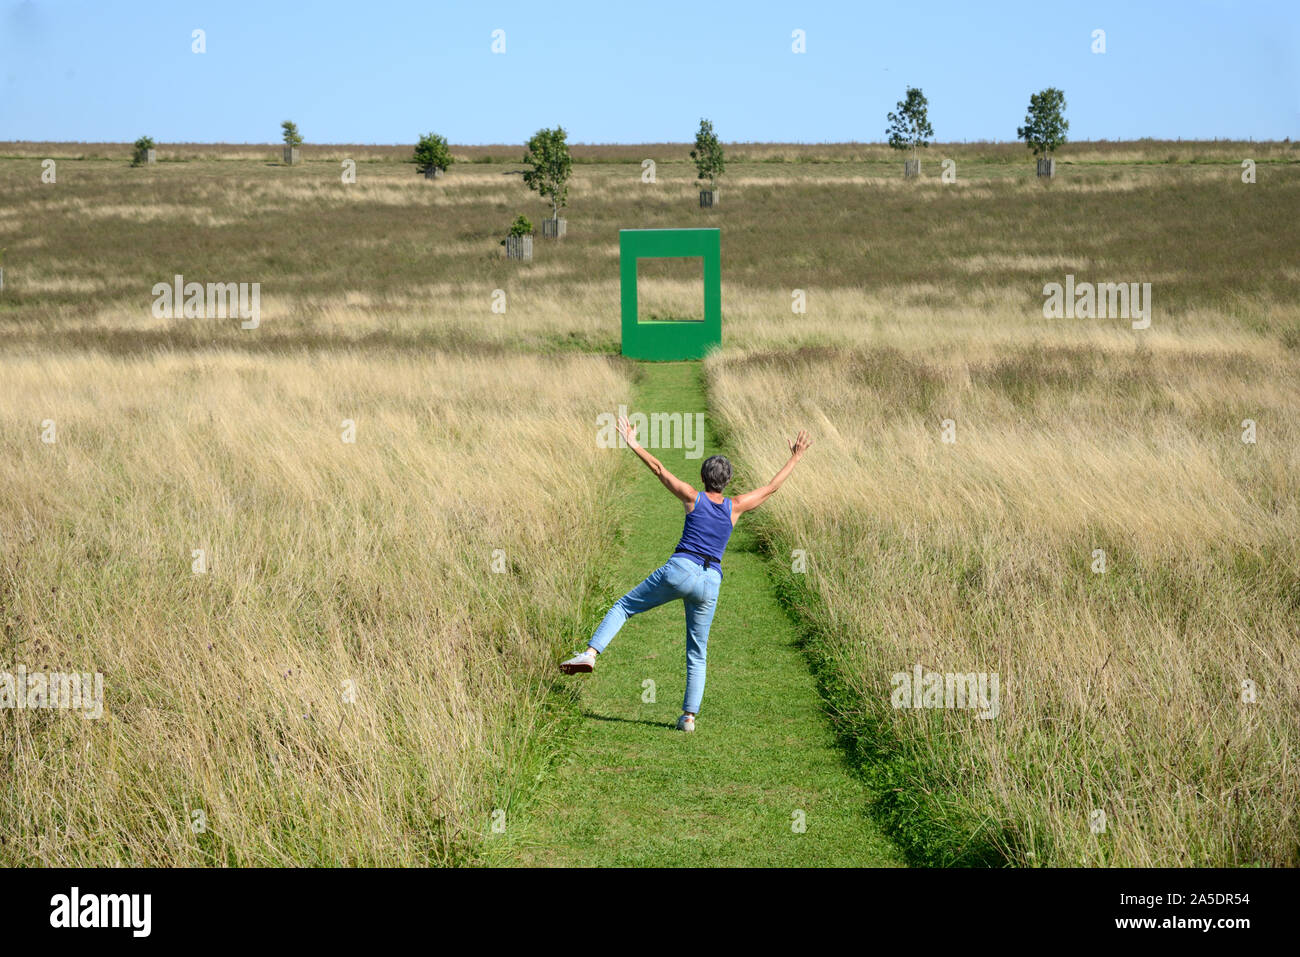 Femme européenne de jouer sur l'herbe coupée sur le terrain avec le Logement Vert Art Installation par Krijn de Koning 2019 en arrière-plan Compton Verney Angleterre Banque D'Images